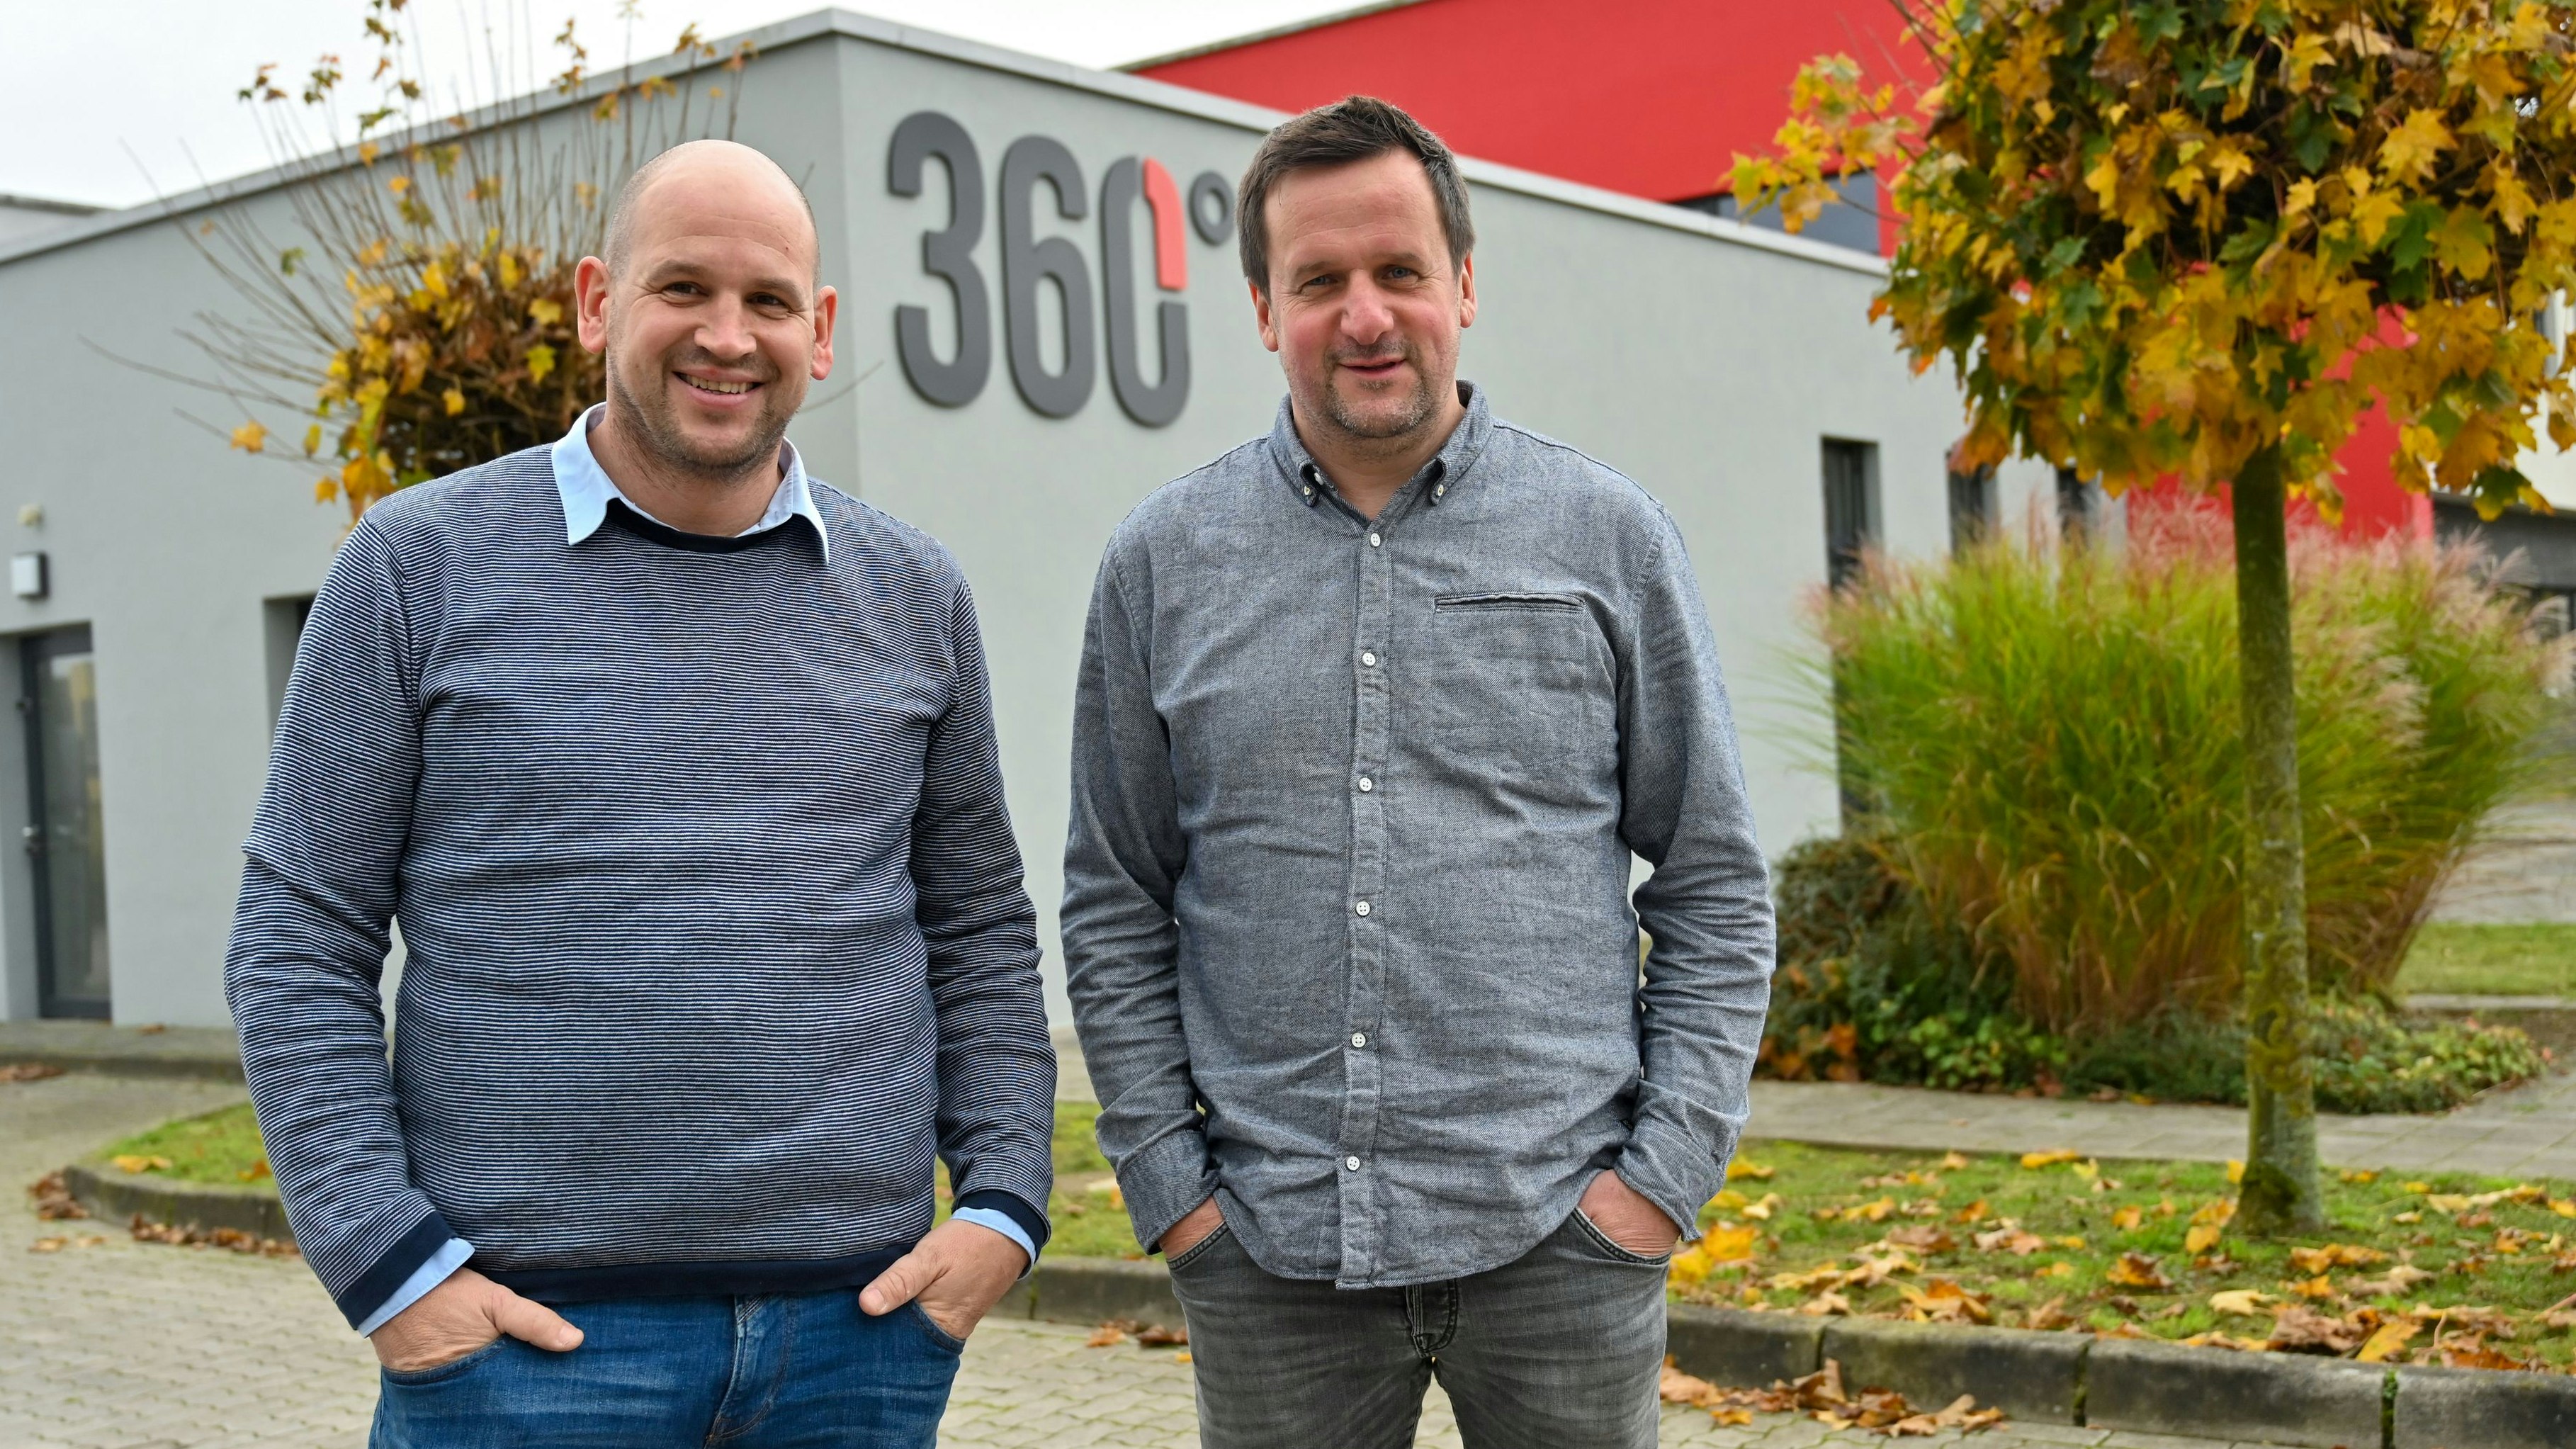 Verantwortlich bei "Jobwärts": Jan Lübbers (von links) und Jörg Stratmann. Foto: Hermes